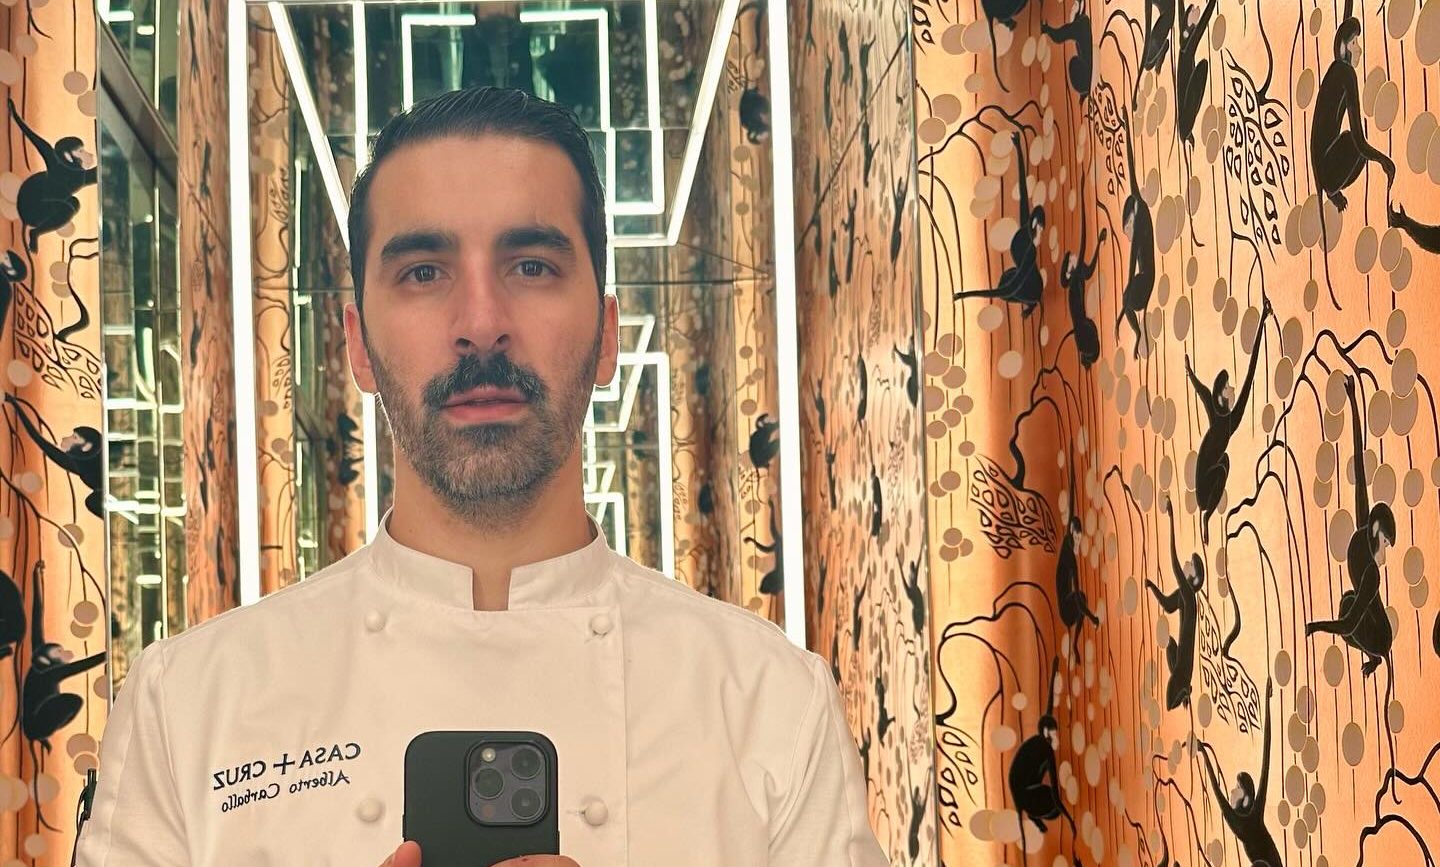 Alberto Carballo, el chef berciano que cocina para celebridades como Leonardo DiCaprio 1